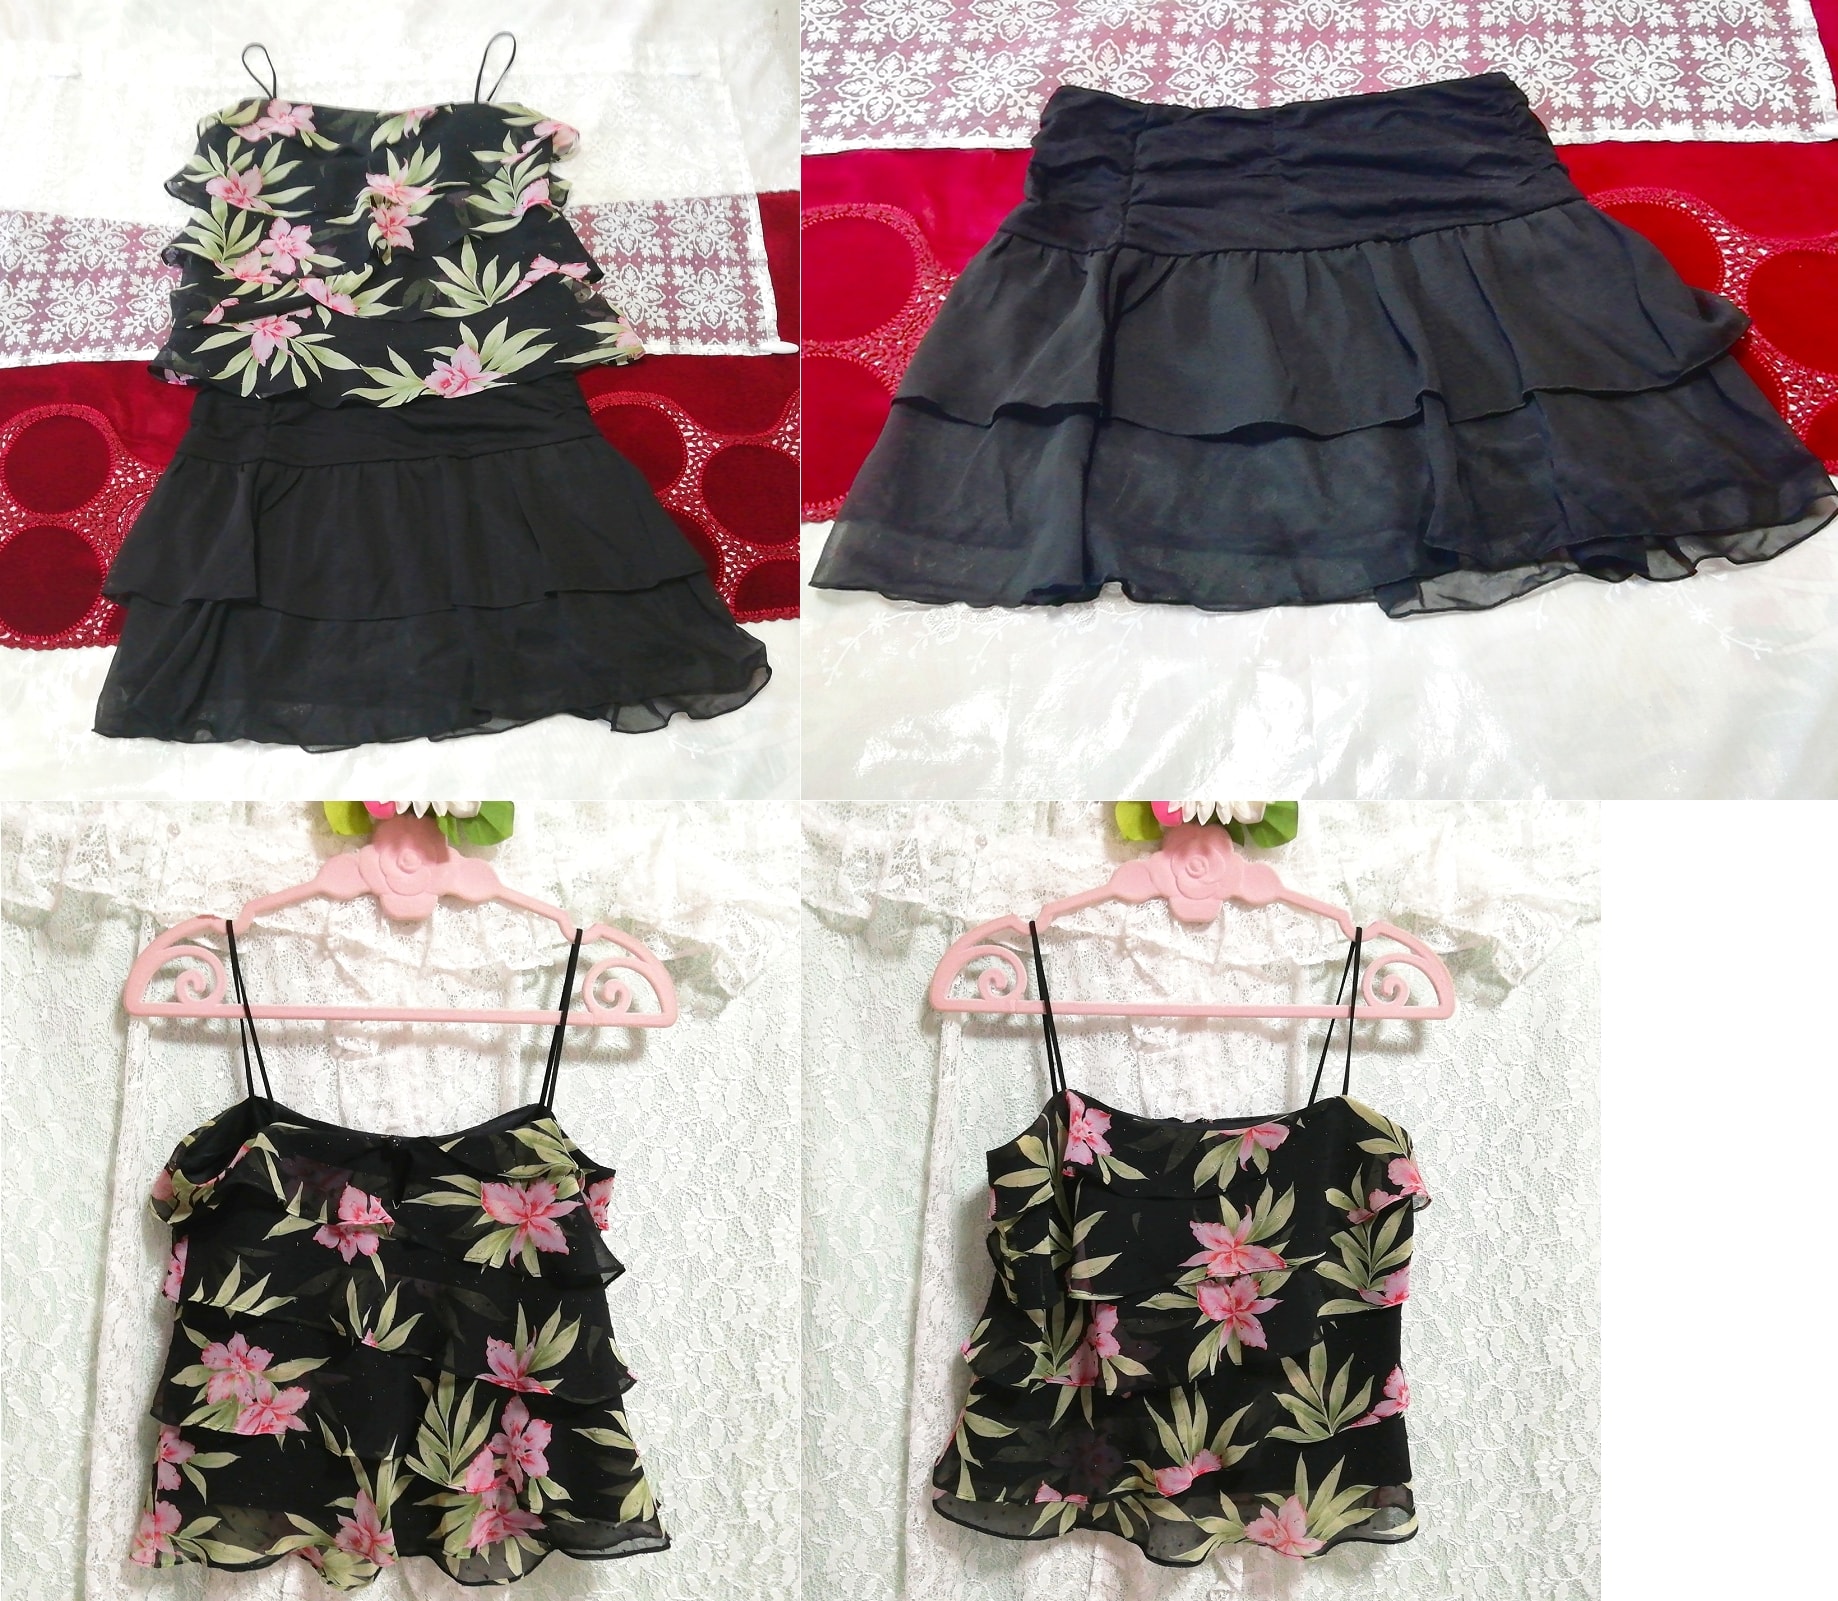 Schwarzes Negligé-Nachthemd aus Chiffon mit Blumenmuster und Rüschen, schwarzer Rüschen-Minirock, 2 Stück, Mode, Frauenmode, Nachtwäsche, Pyjama